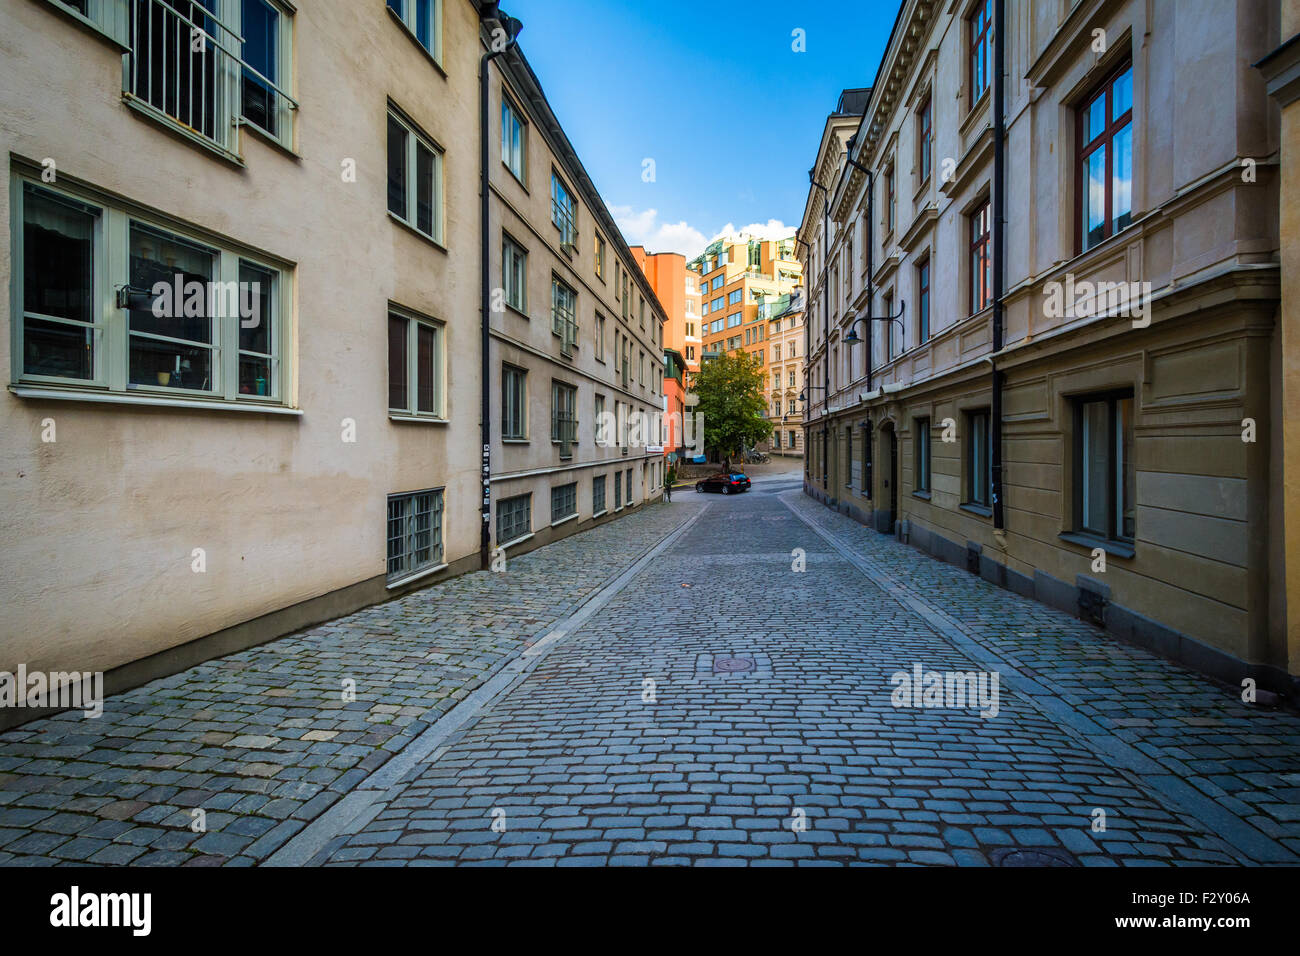 bastugatan-a-narrow-cobblestone-street-in-sdermalm-stockholm-sweden-F2Y06A.jpg